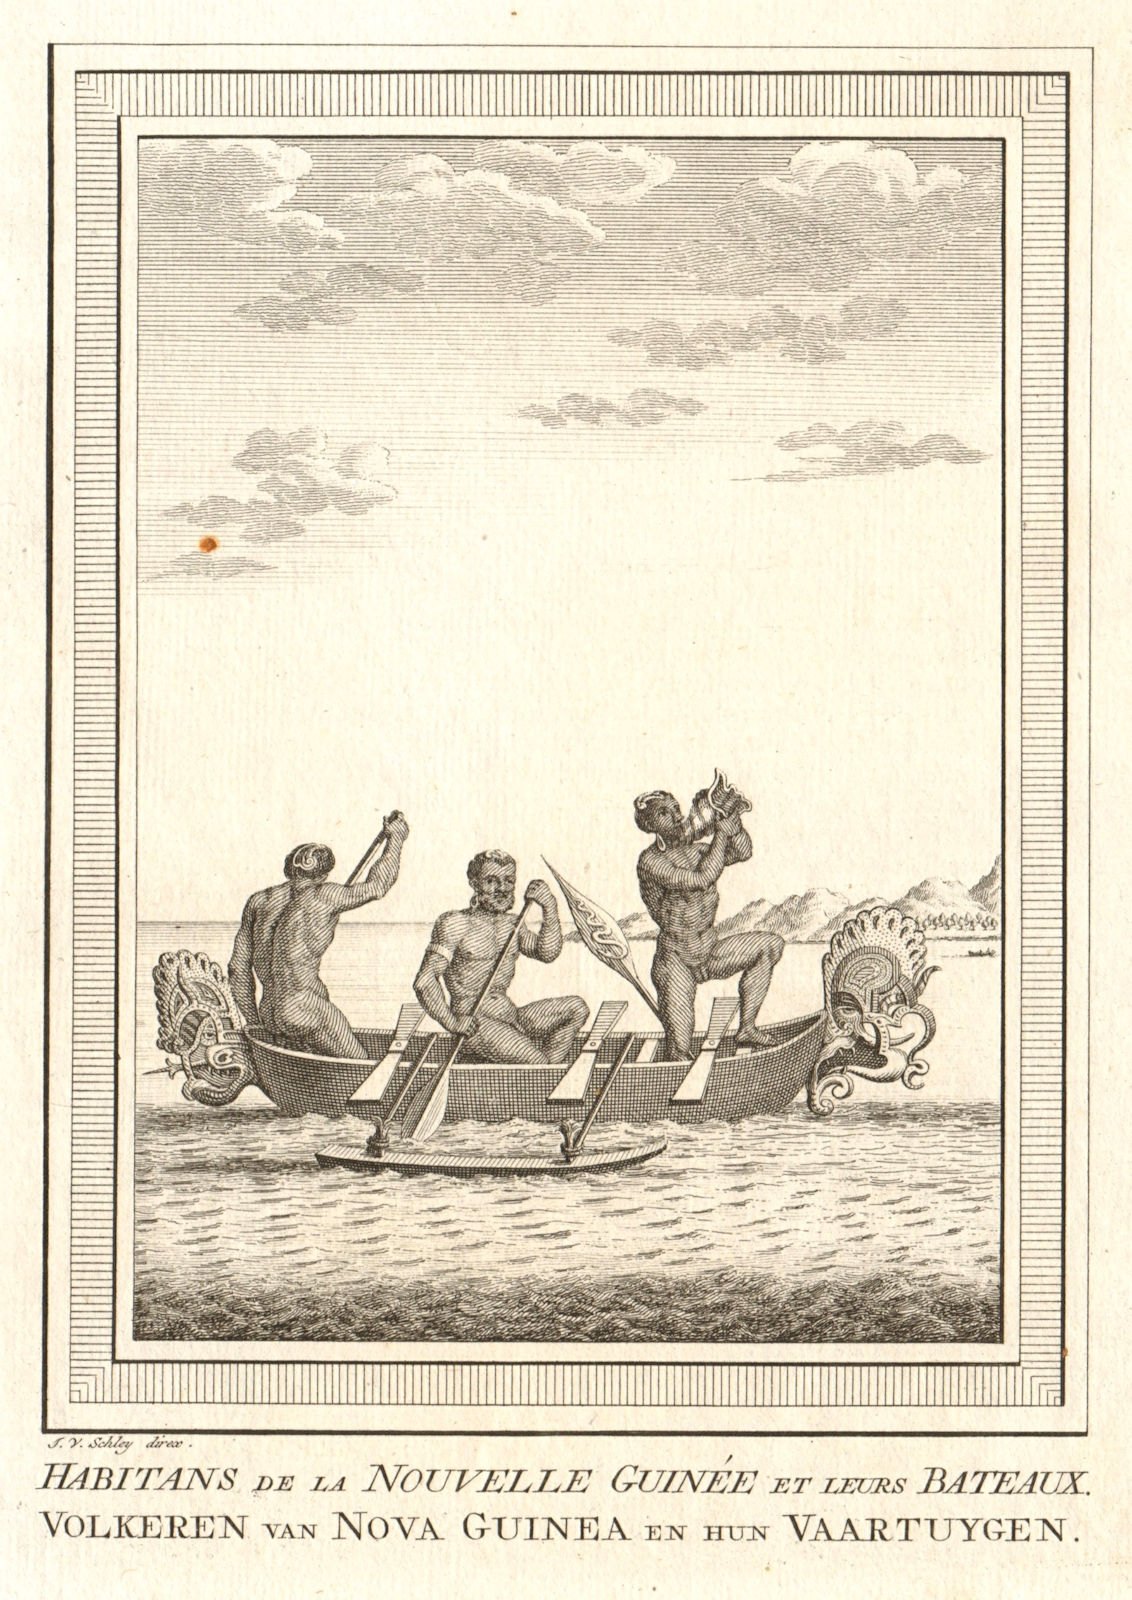 Associate Product 'Habitans de la Nouvelle Guinée et leurs bateaux'. New Guinea. Boat. SCHLEY 1758